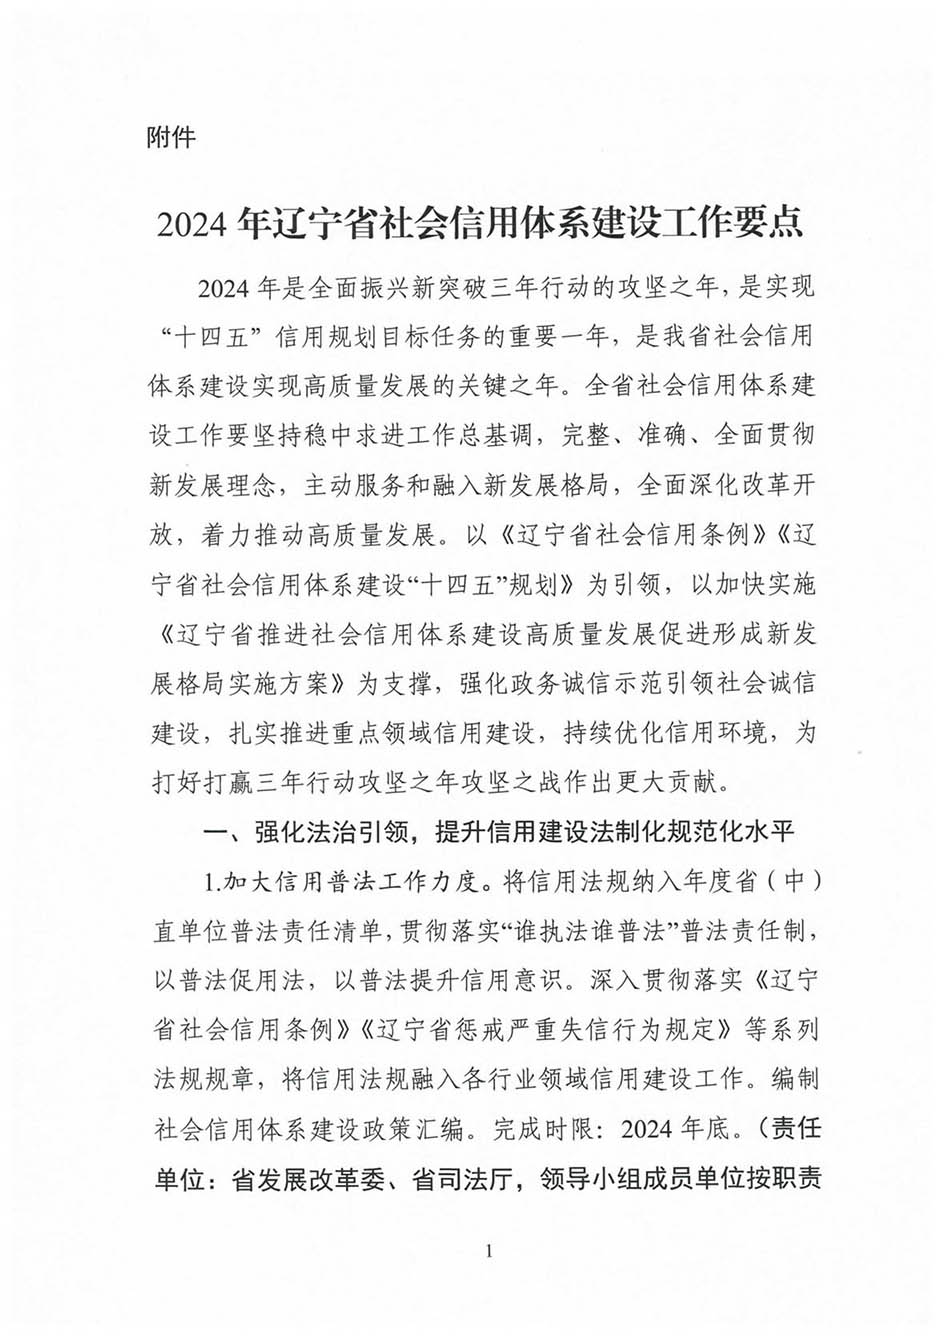 省信用办关于印发《2024年辽宁省社会信用体系建设工作要点》的通知